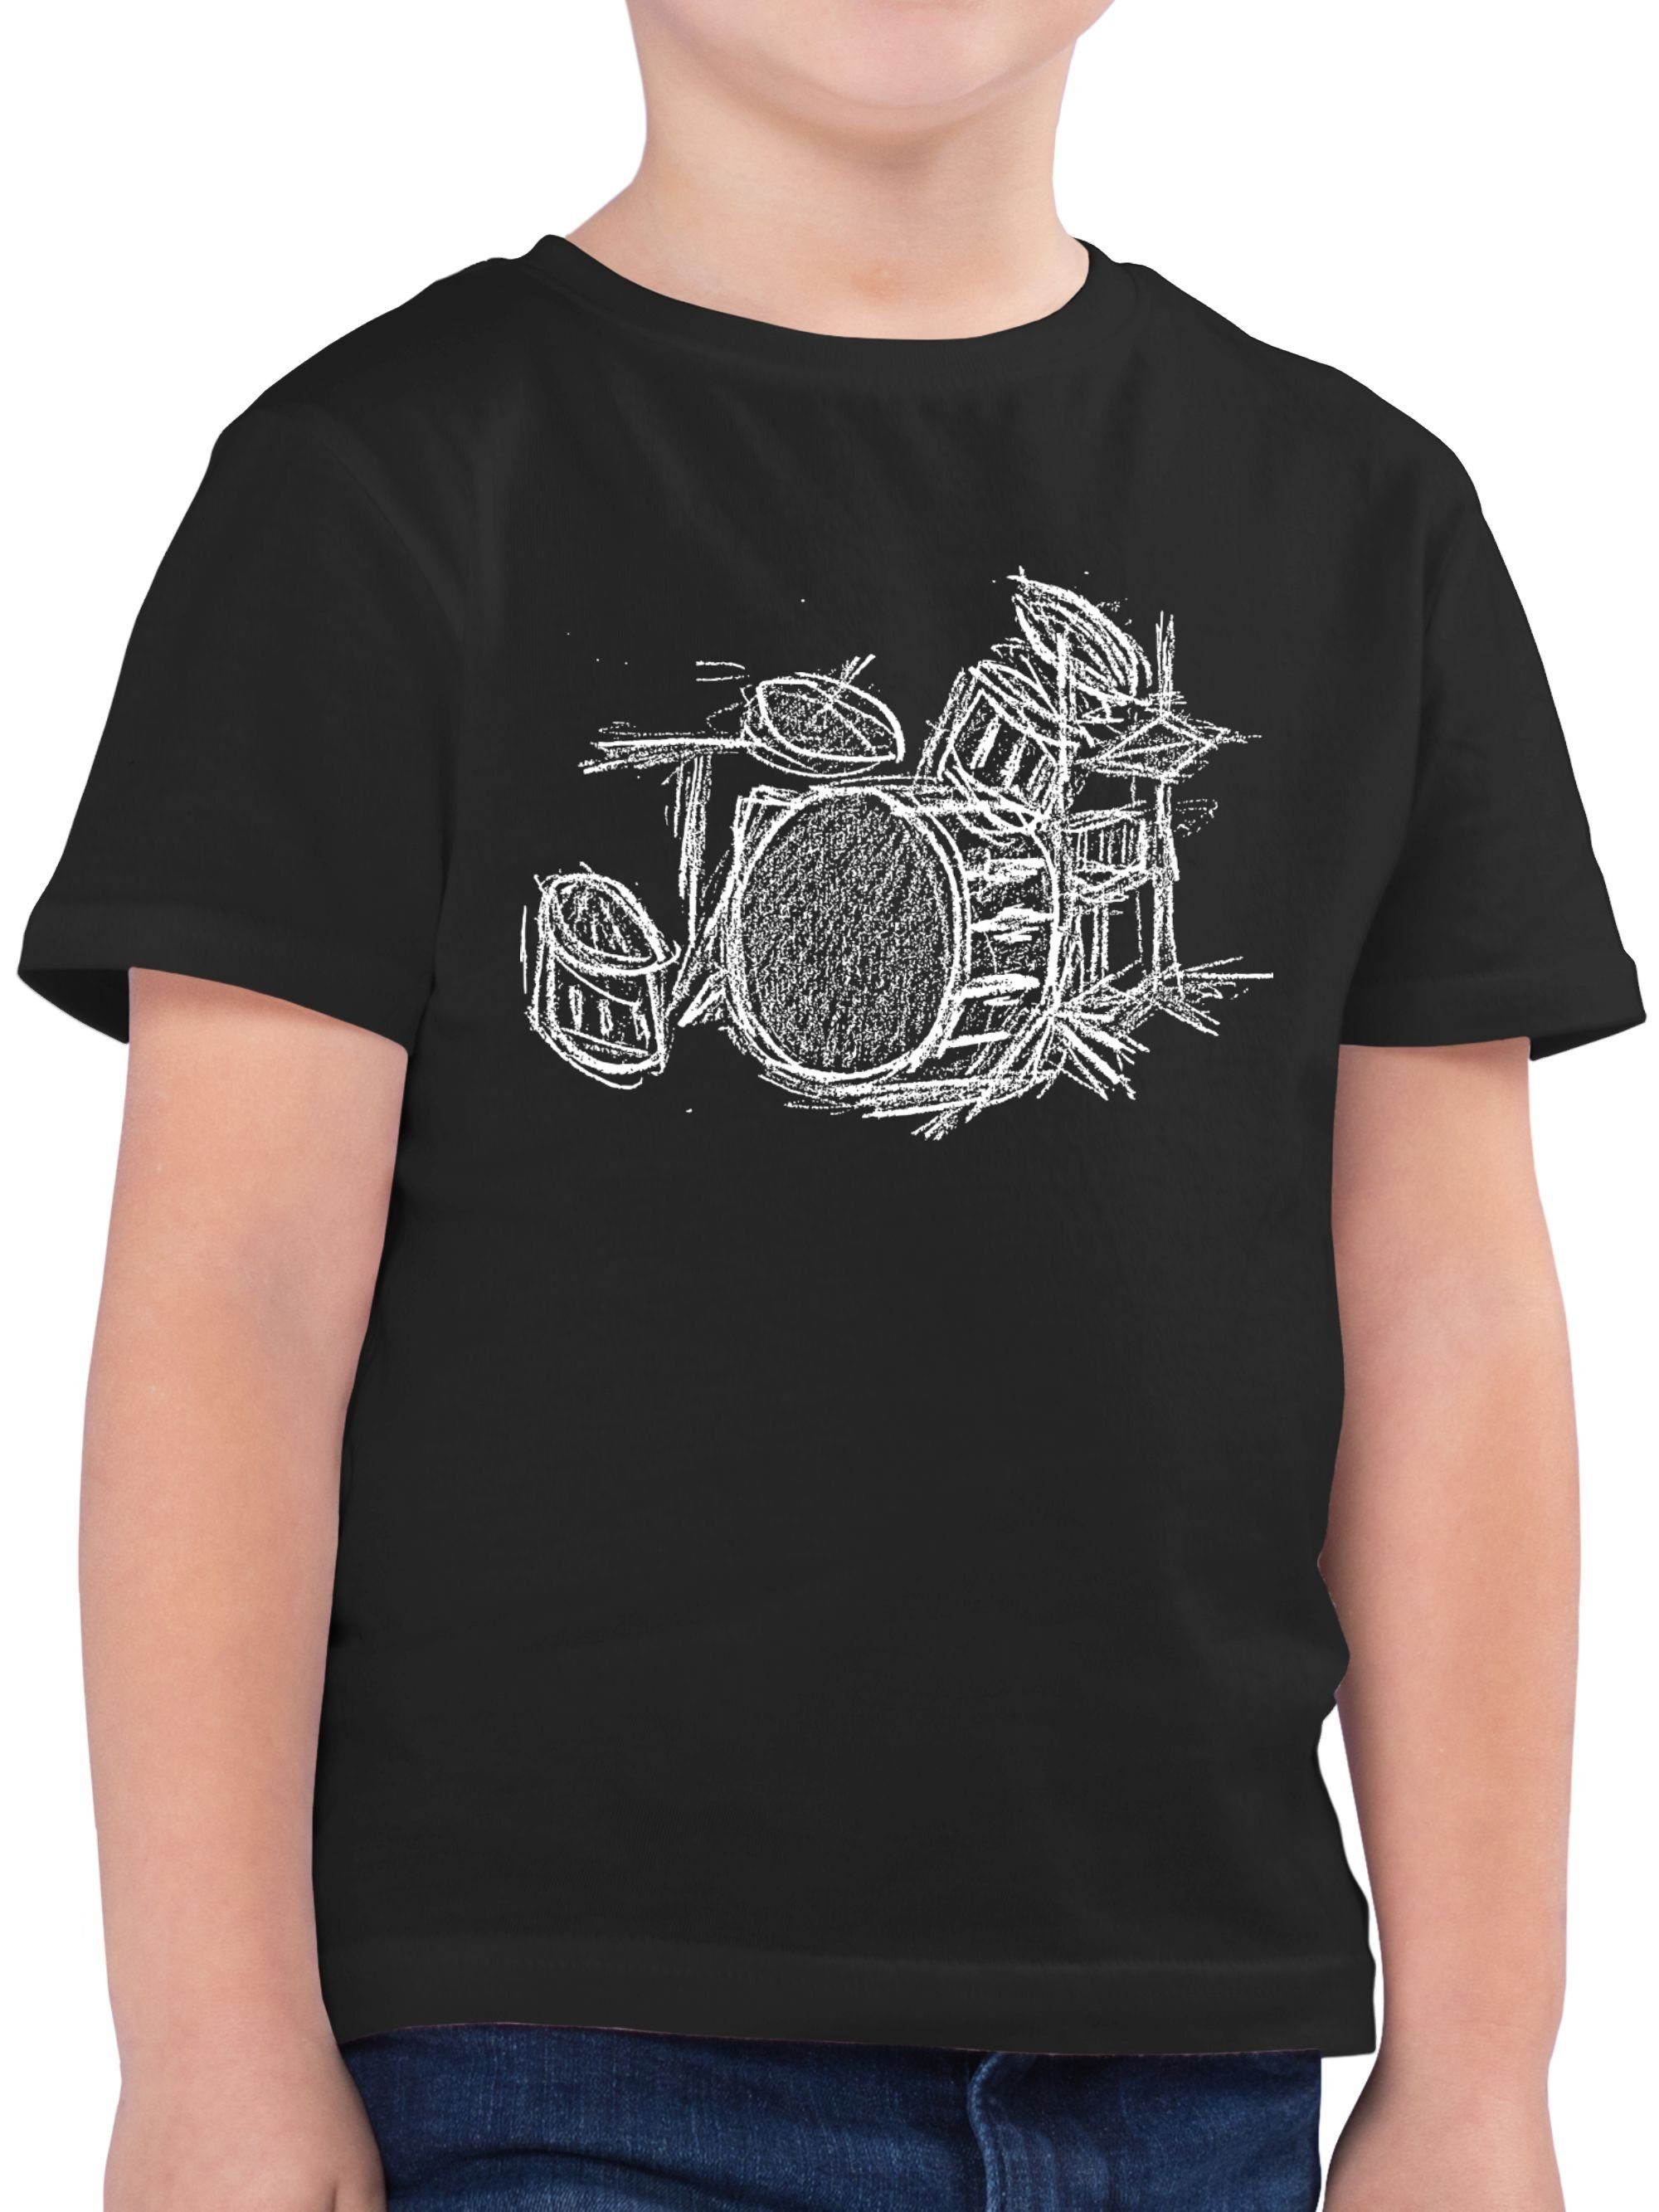 Shirtracer T-Shirt Schlagzeug - Kreidezeichnung Music Schwarz 1